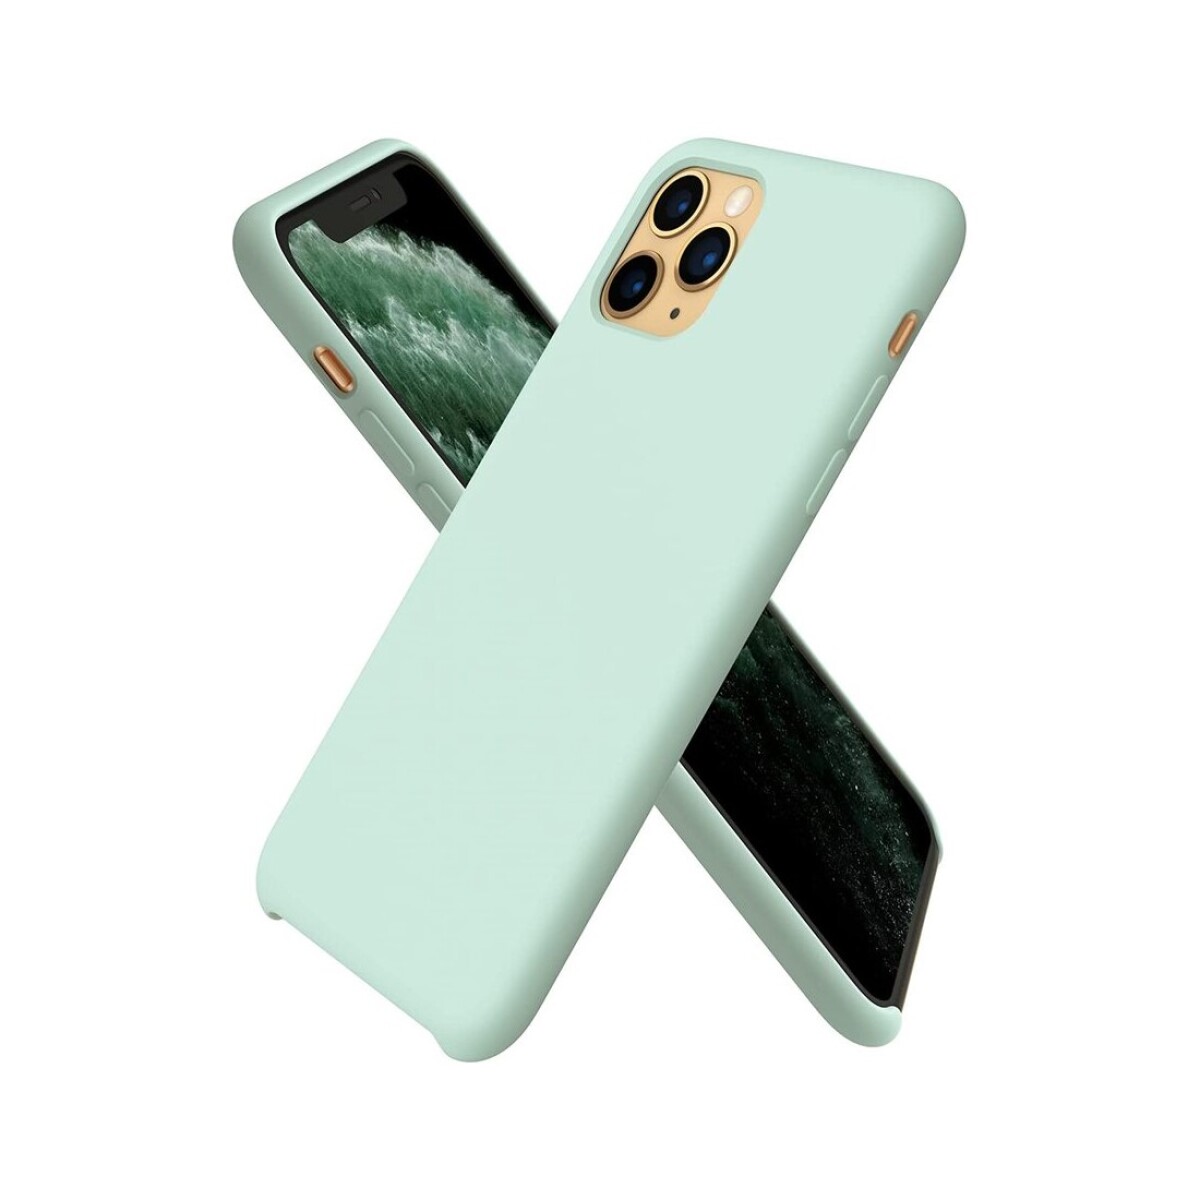 Protector case de silicona para iphone 11 pro max - Menta 